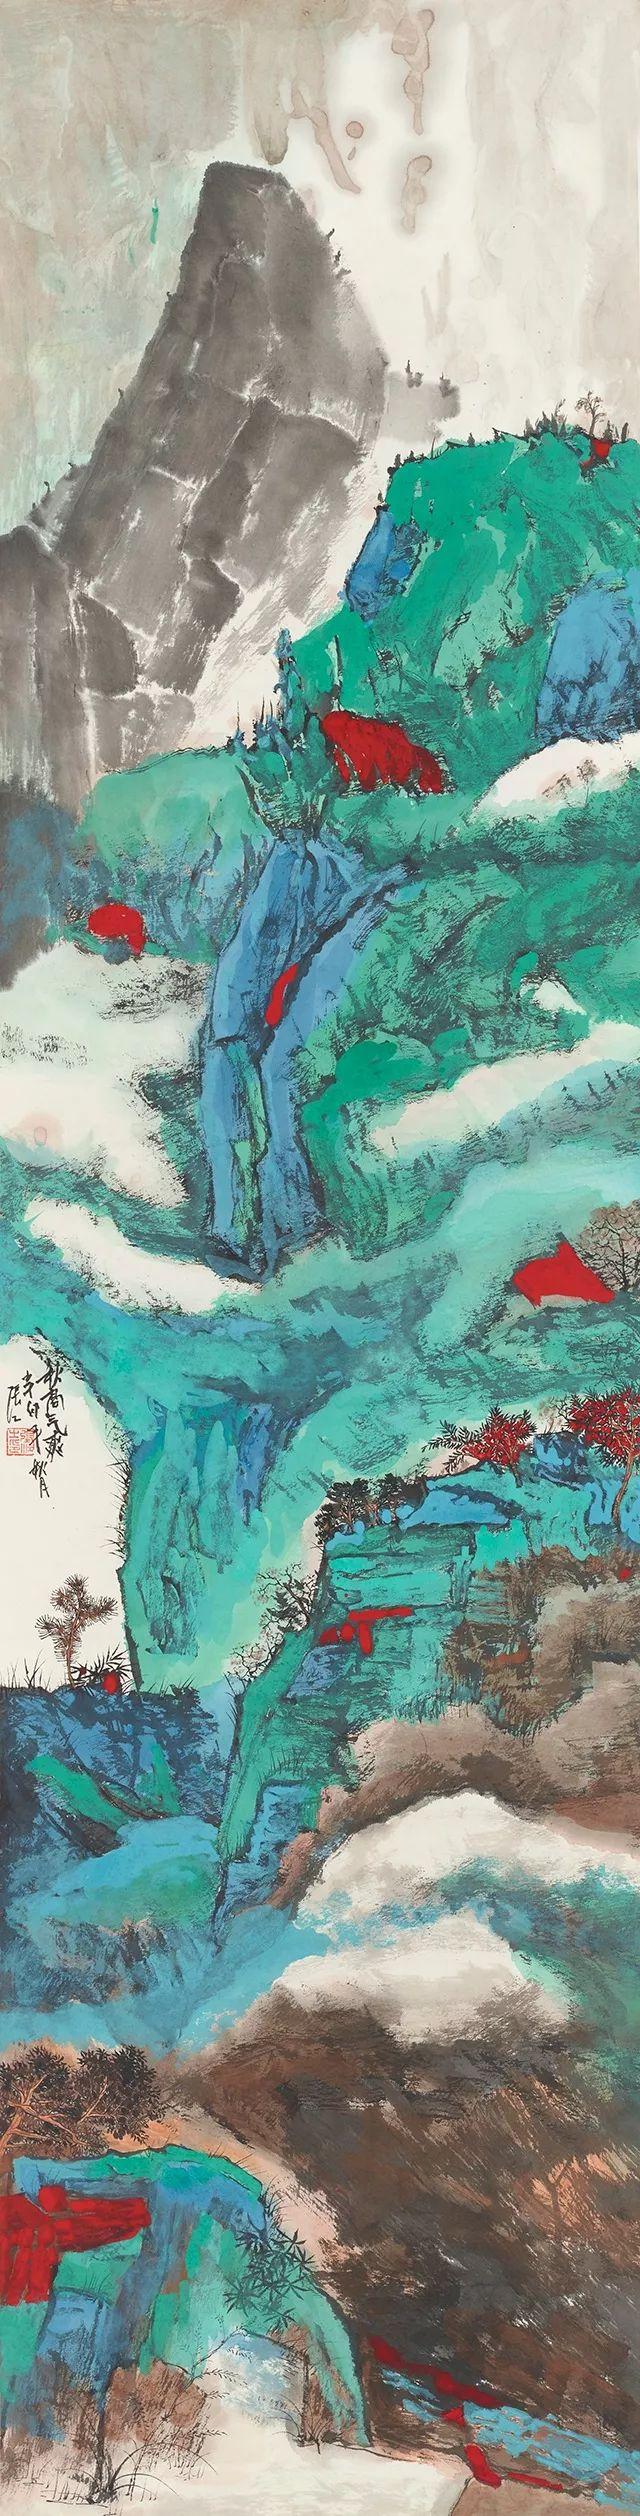 【环境日】描绘,你心中的绿水青山美丽中国画卷